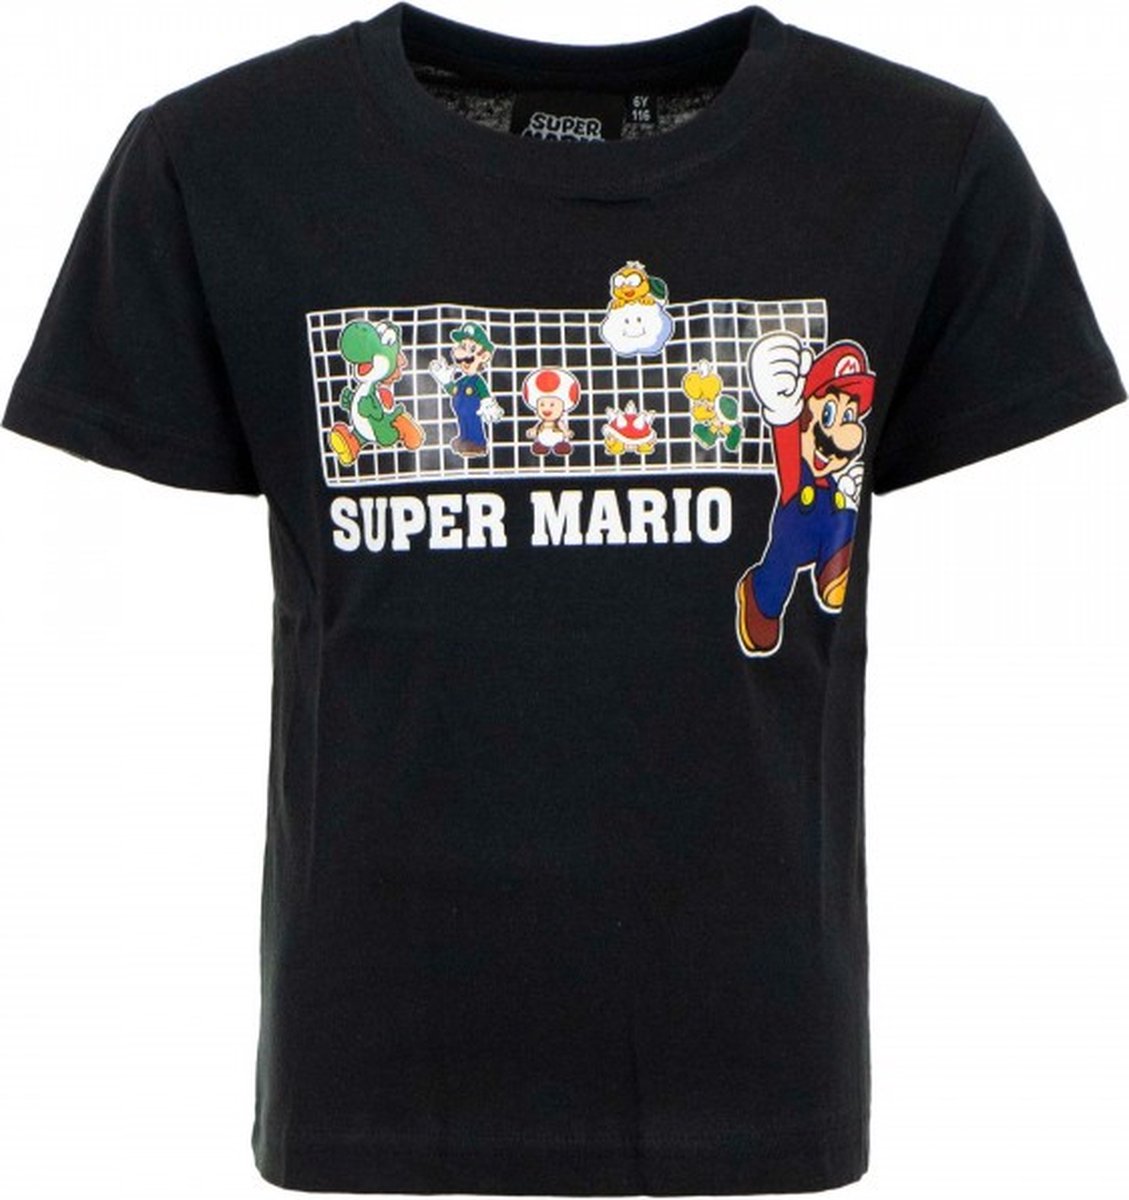 Super Mario & friends - t-shirt - zwart - jongens - maat 3 jaar